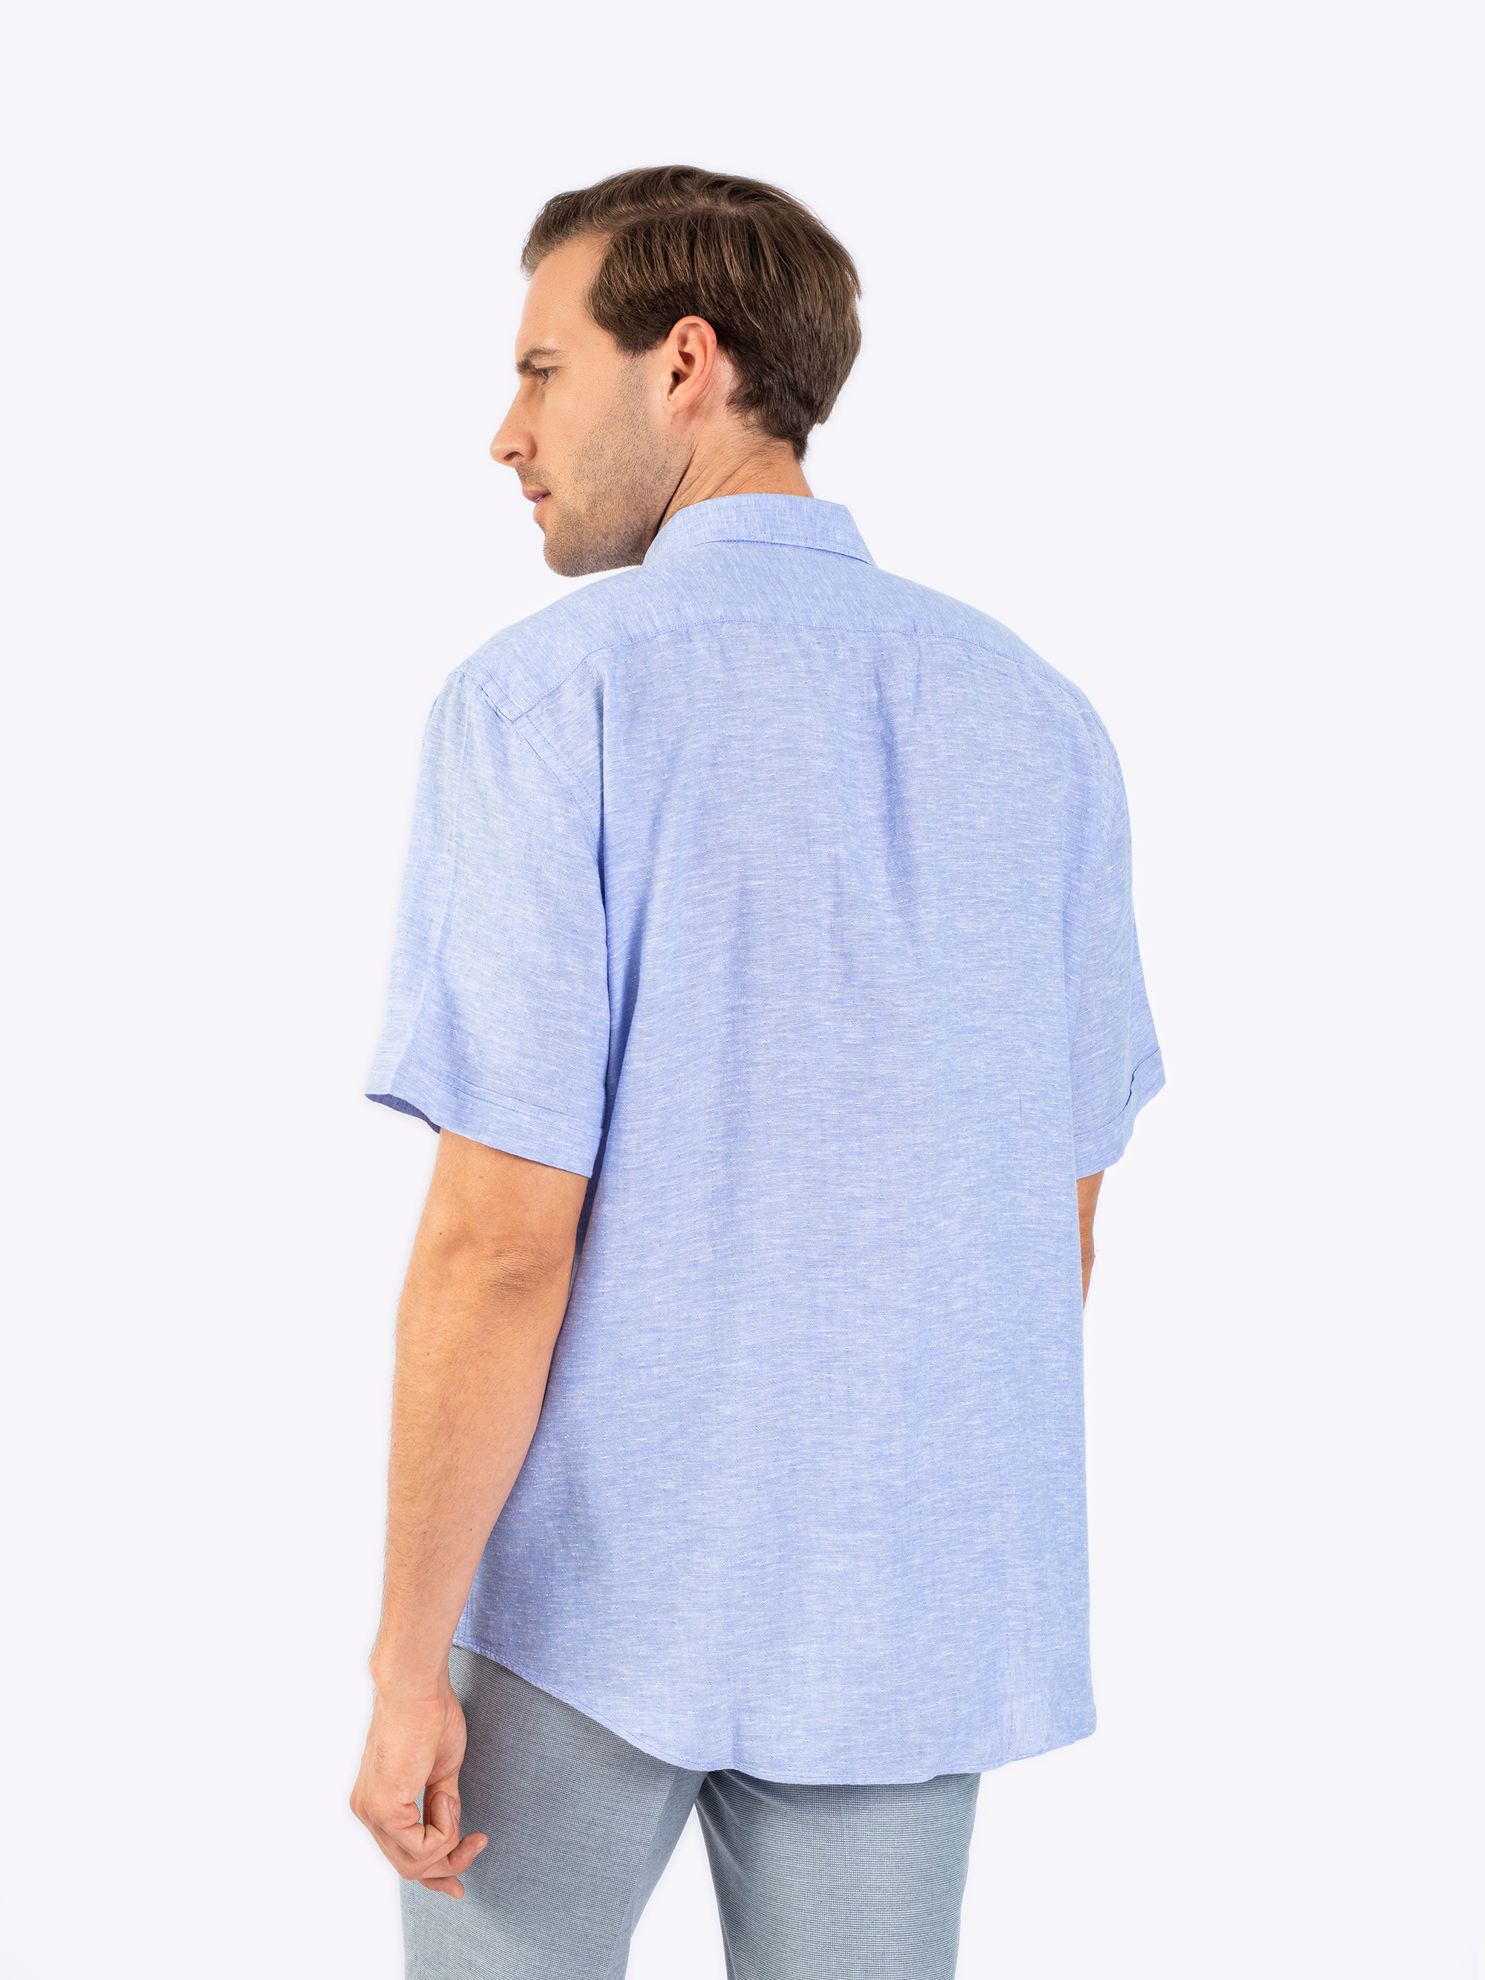 Karaca Erkek Büyük Beden Gömlek-Mavi. ürün görseli